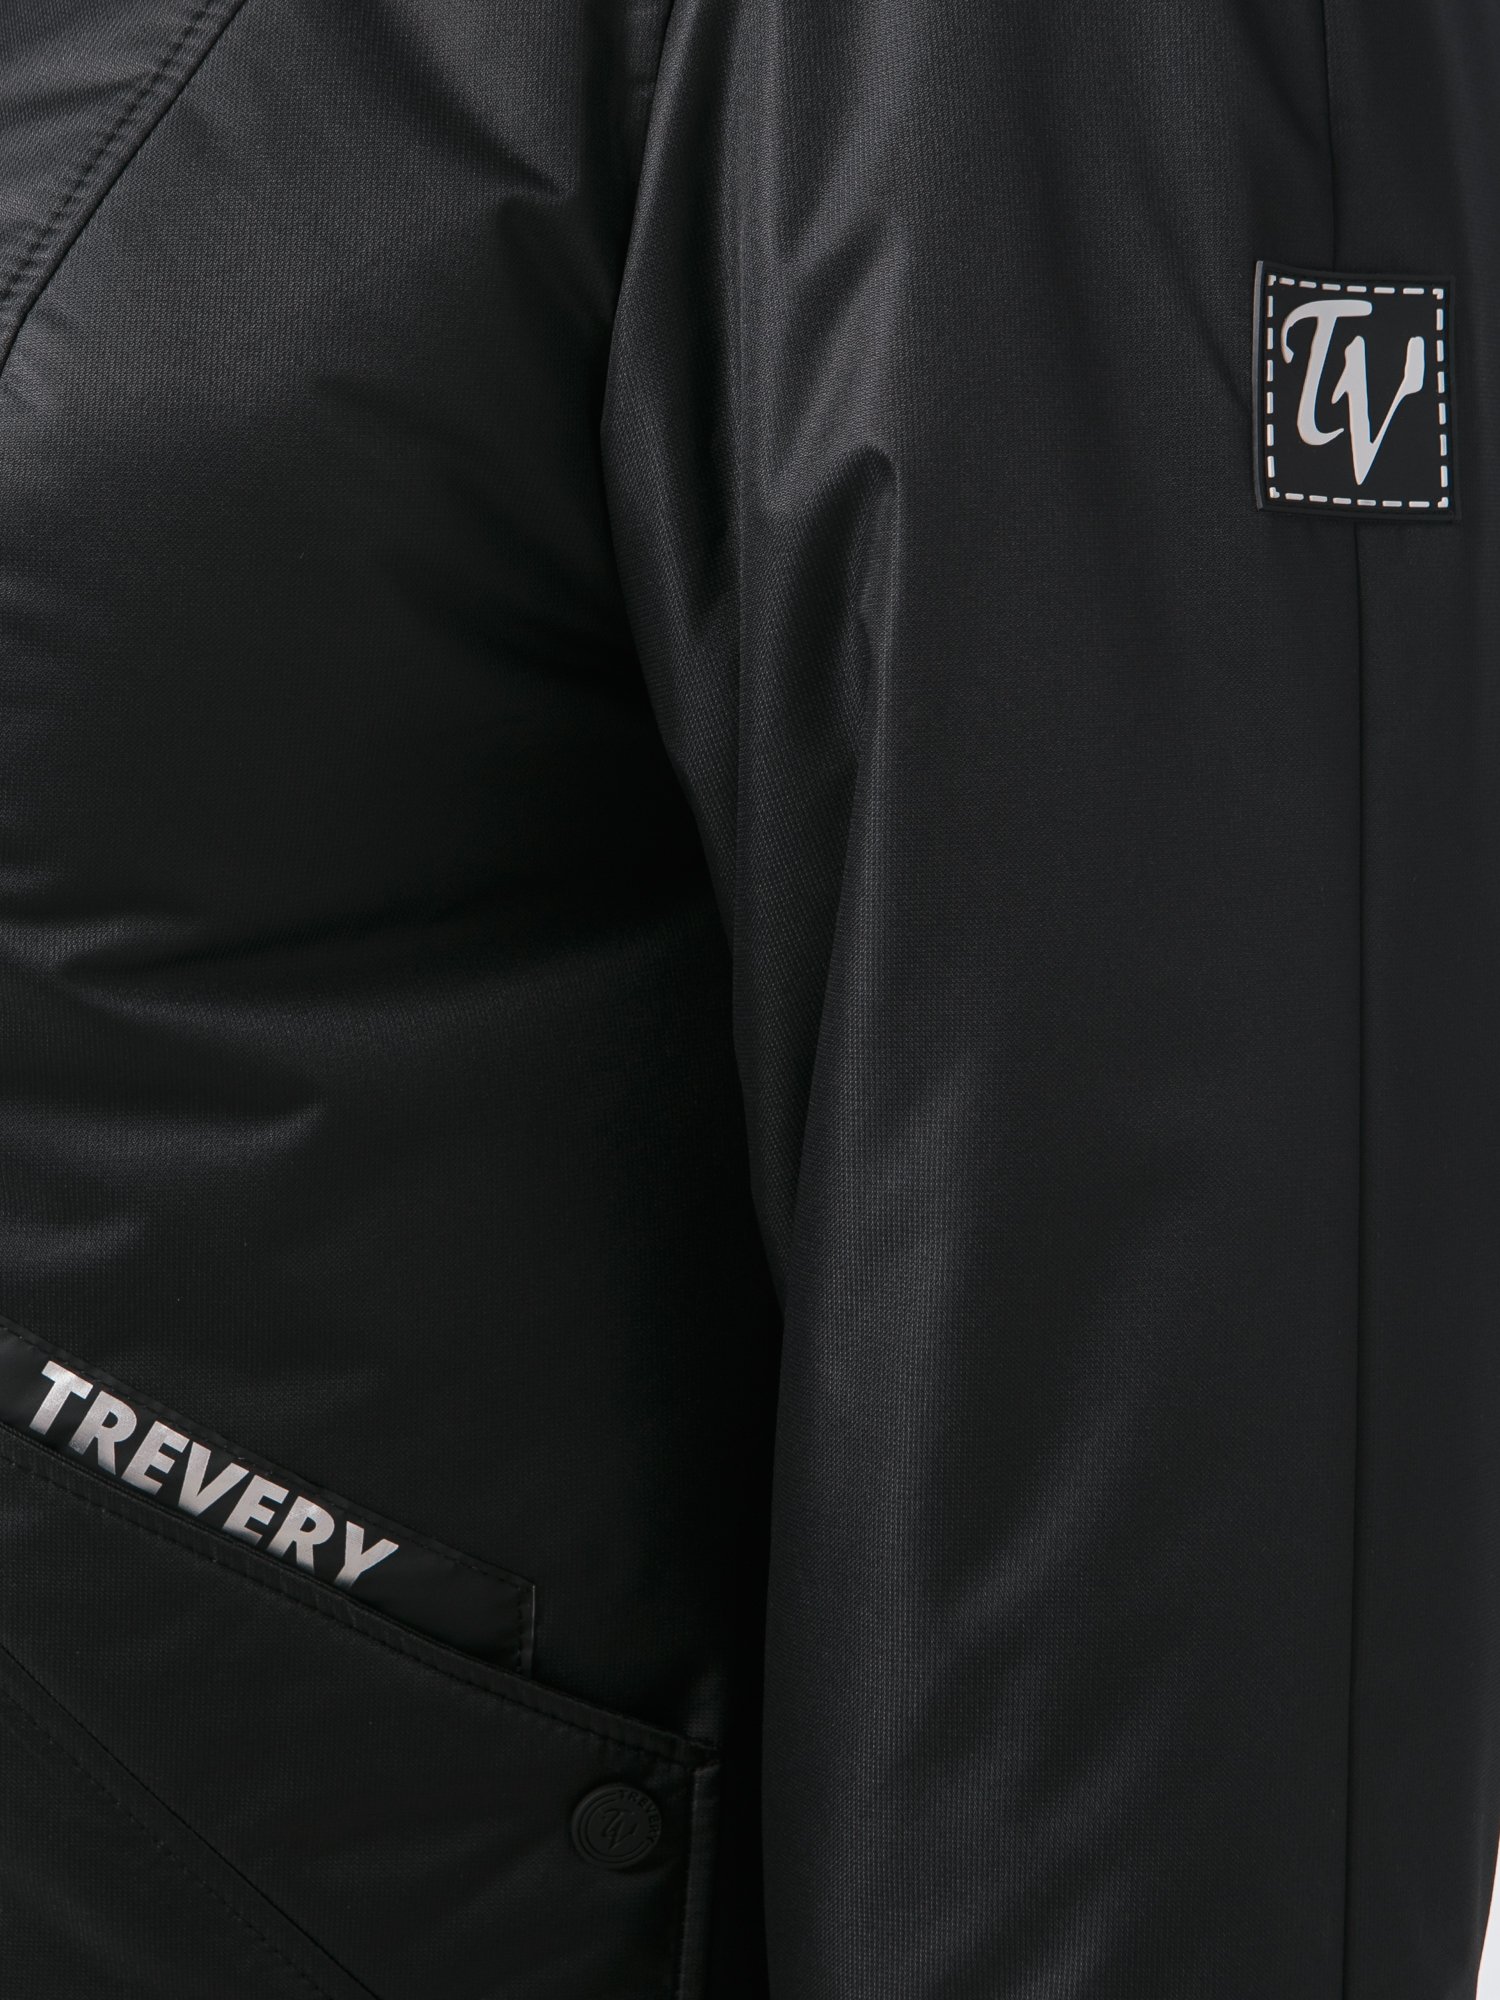 Пальто женское TreVery 83824 черное 76 RU